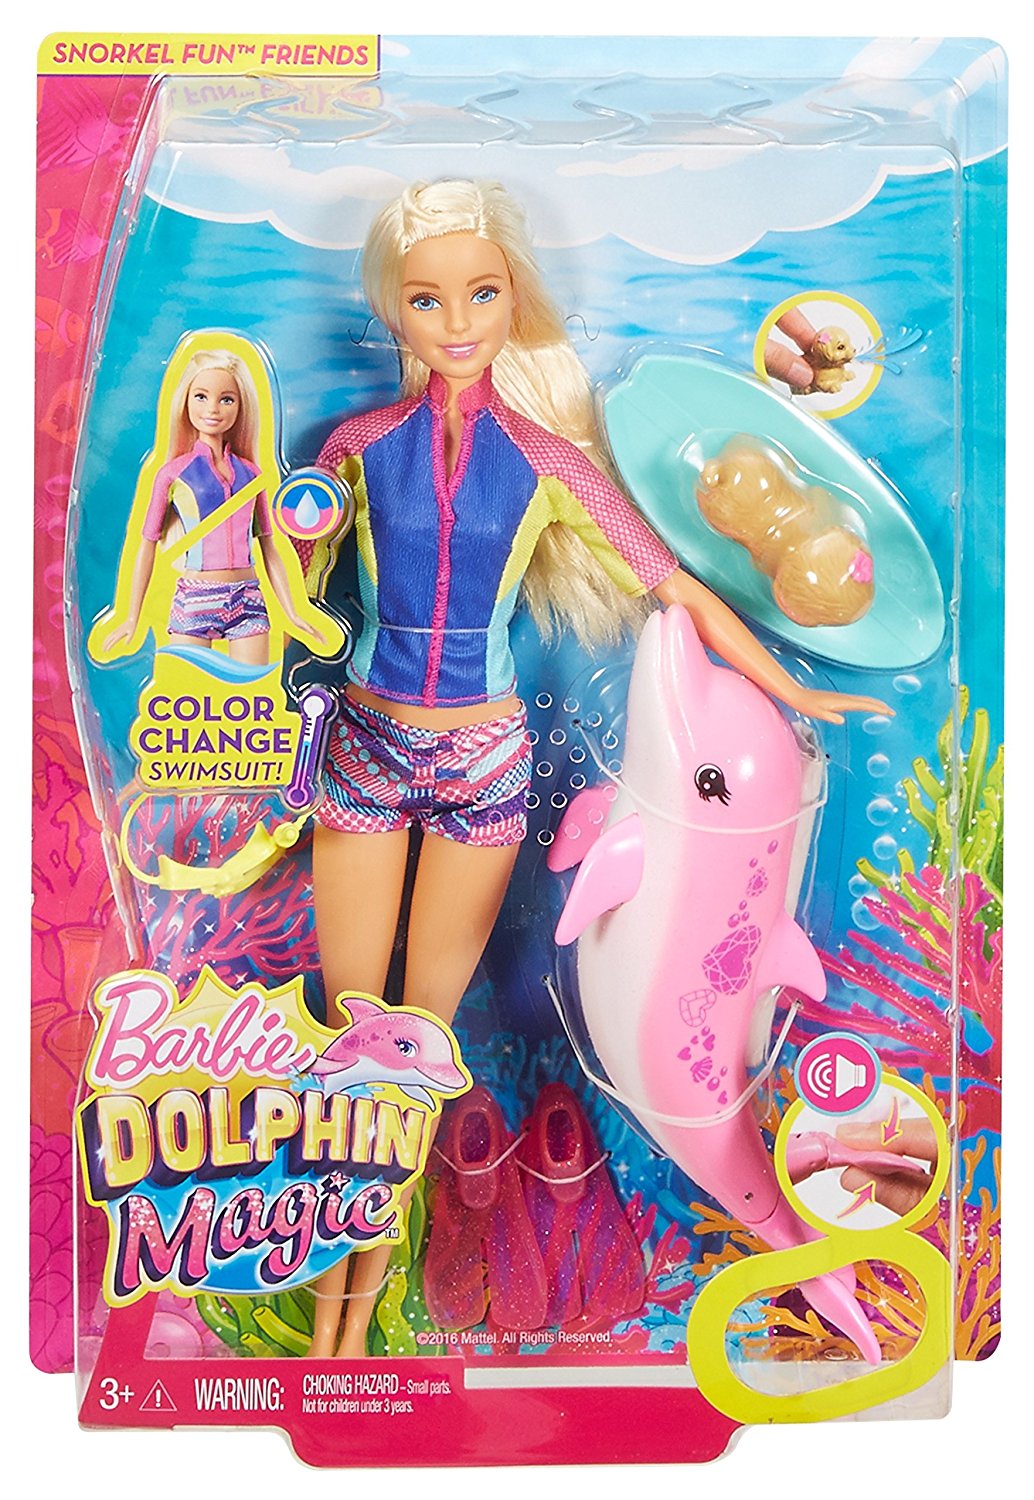 Кукла Barbie из серии Морские приключения  